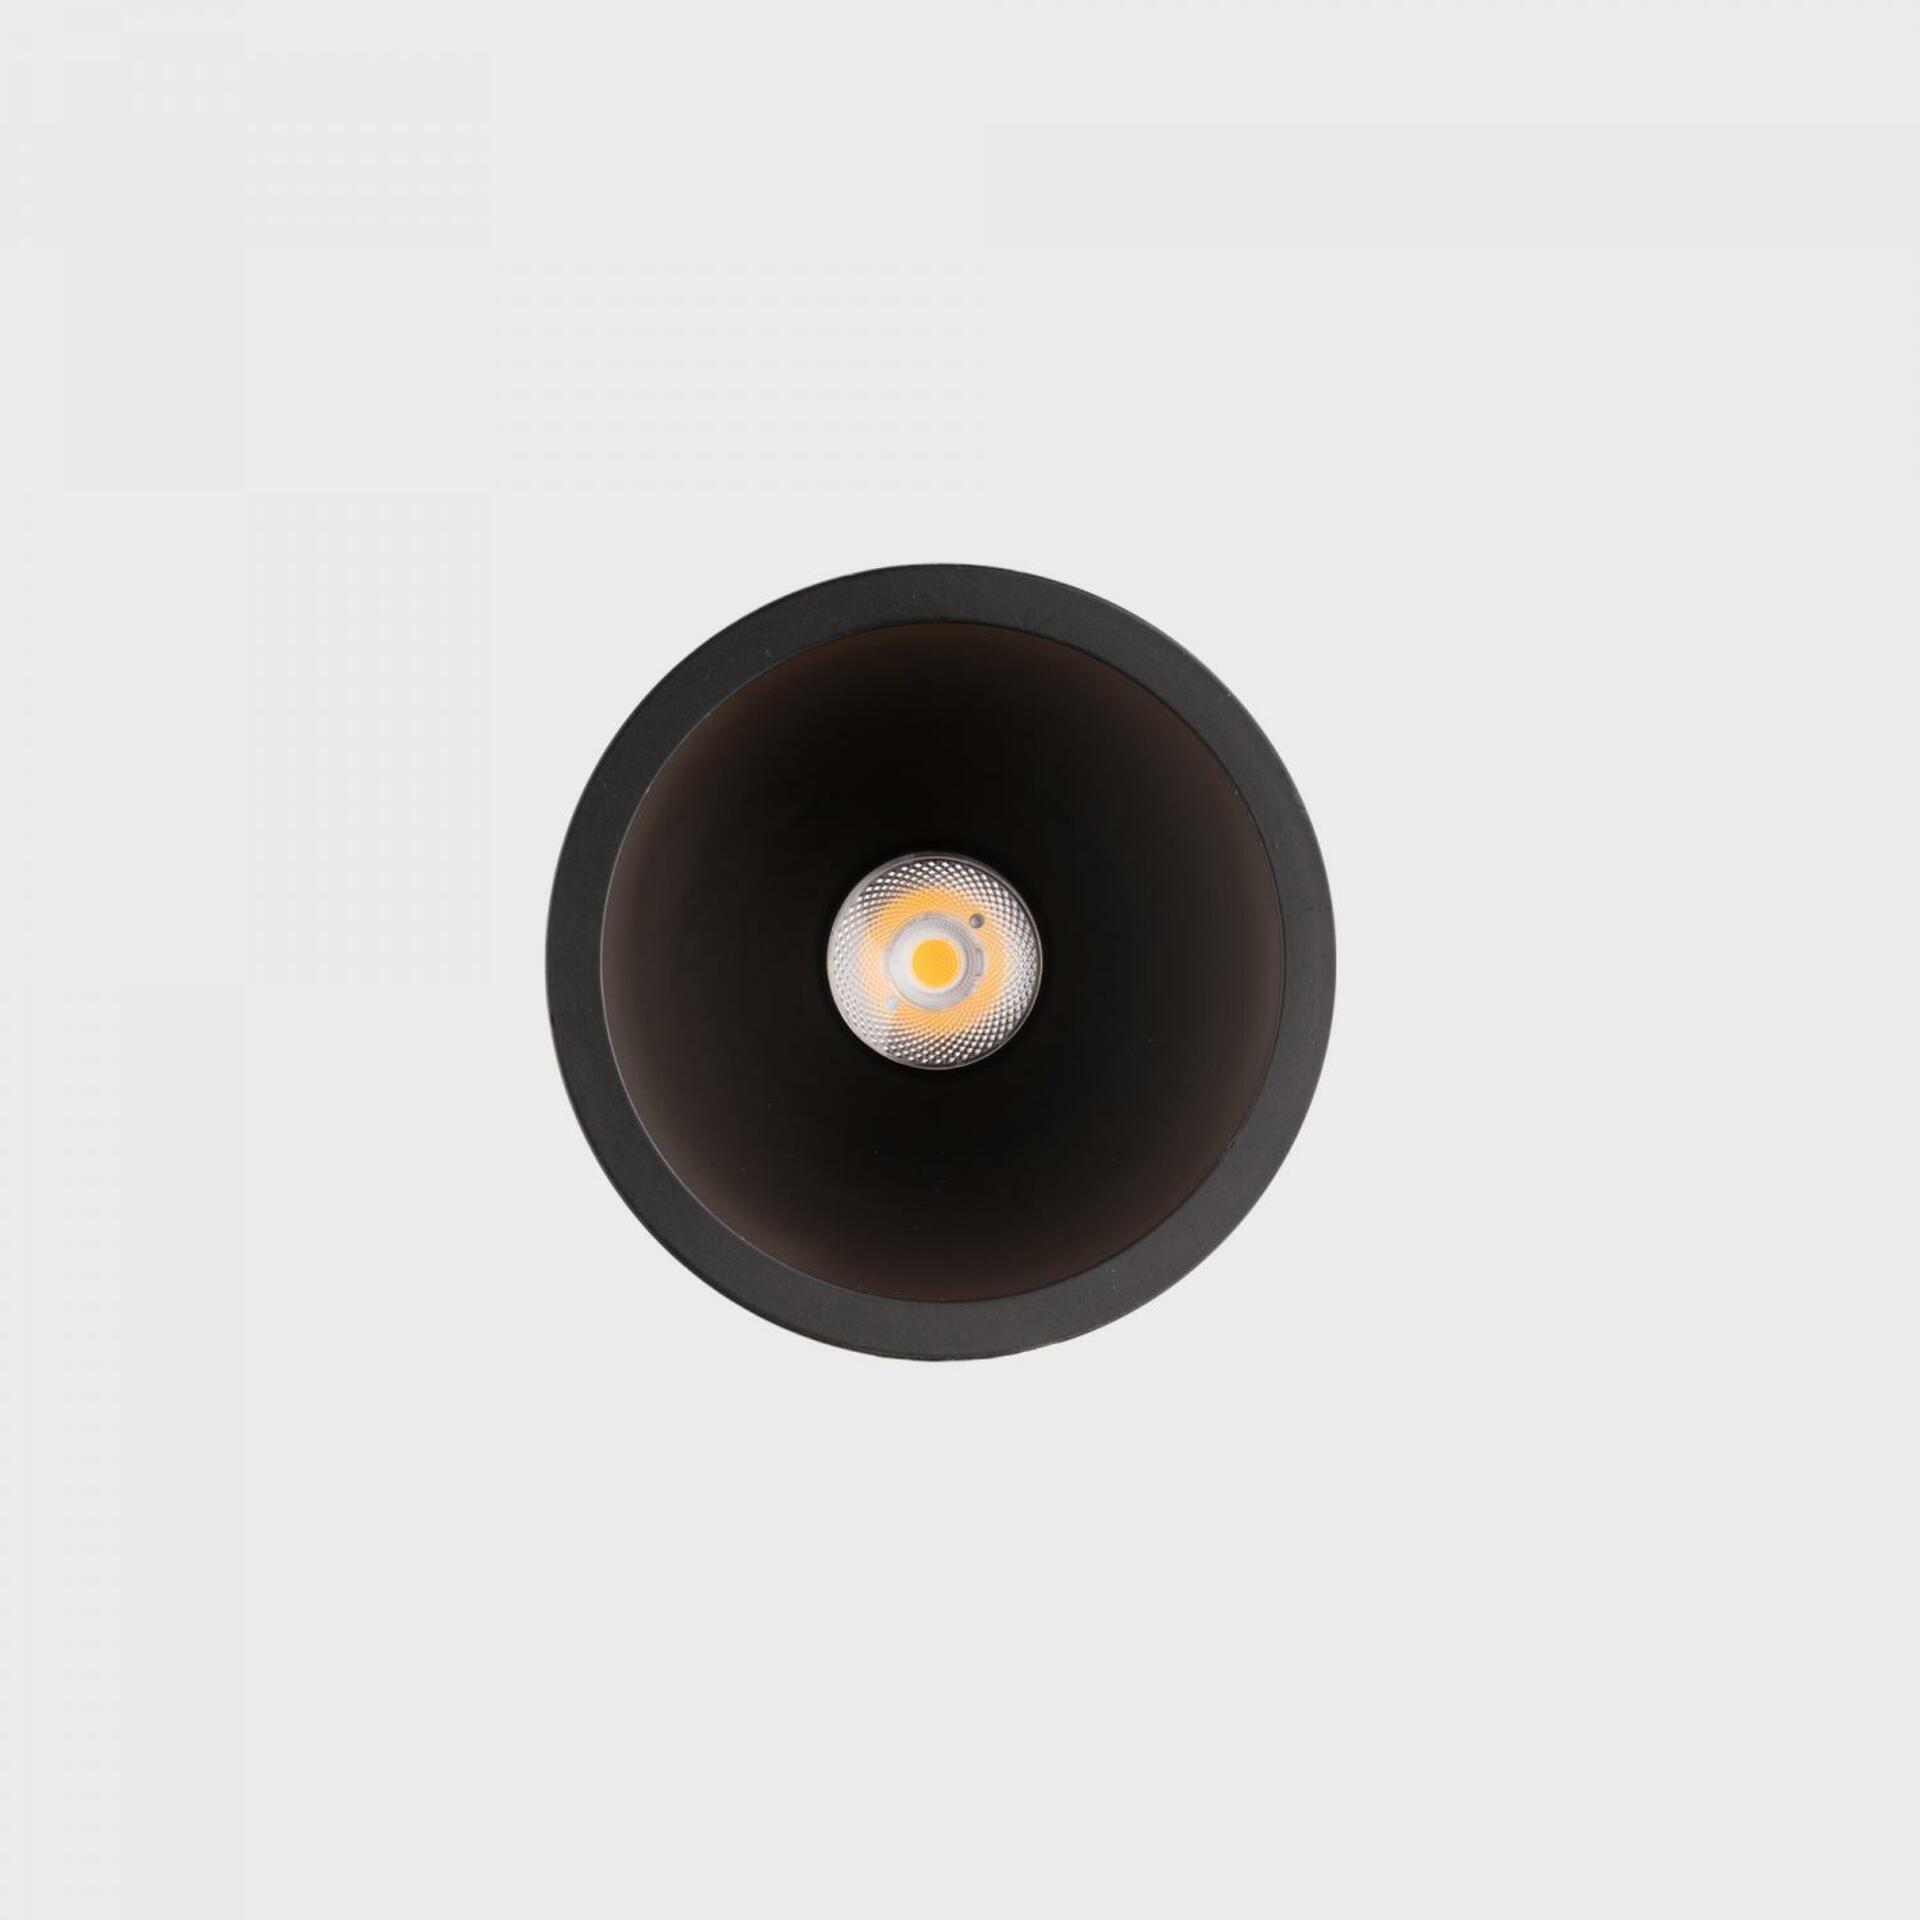 KOHL LIGHTING KOHL-Lighting NOON zapuštěné svítidlo s rámečkem pr. 70 mm černá 38° 5 W  CRI 80 4000K 1.10V